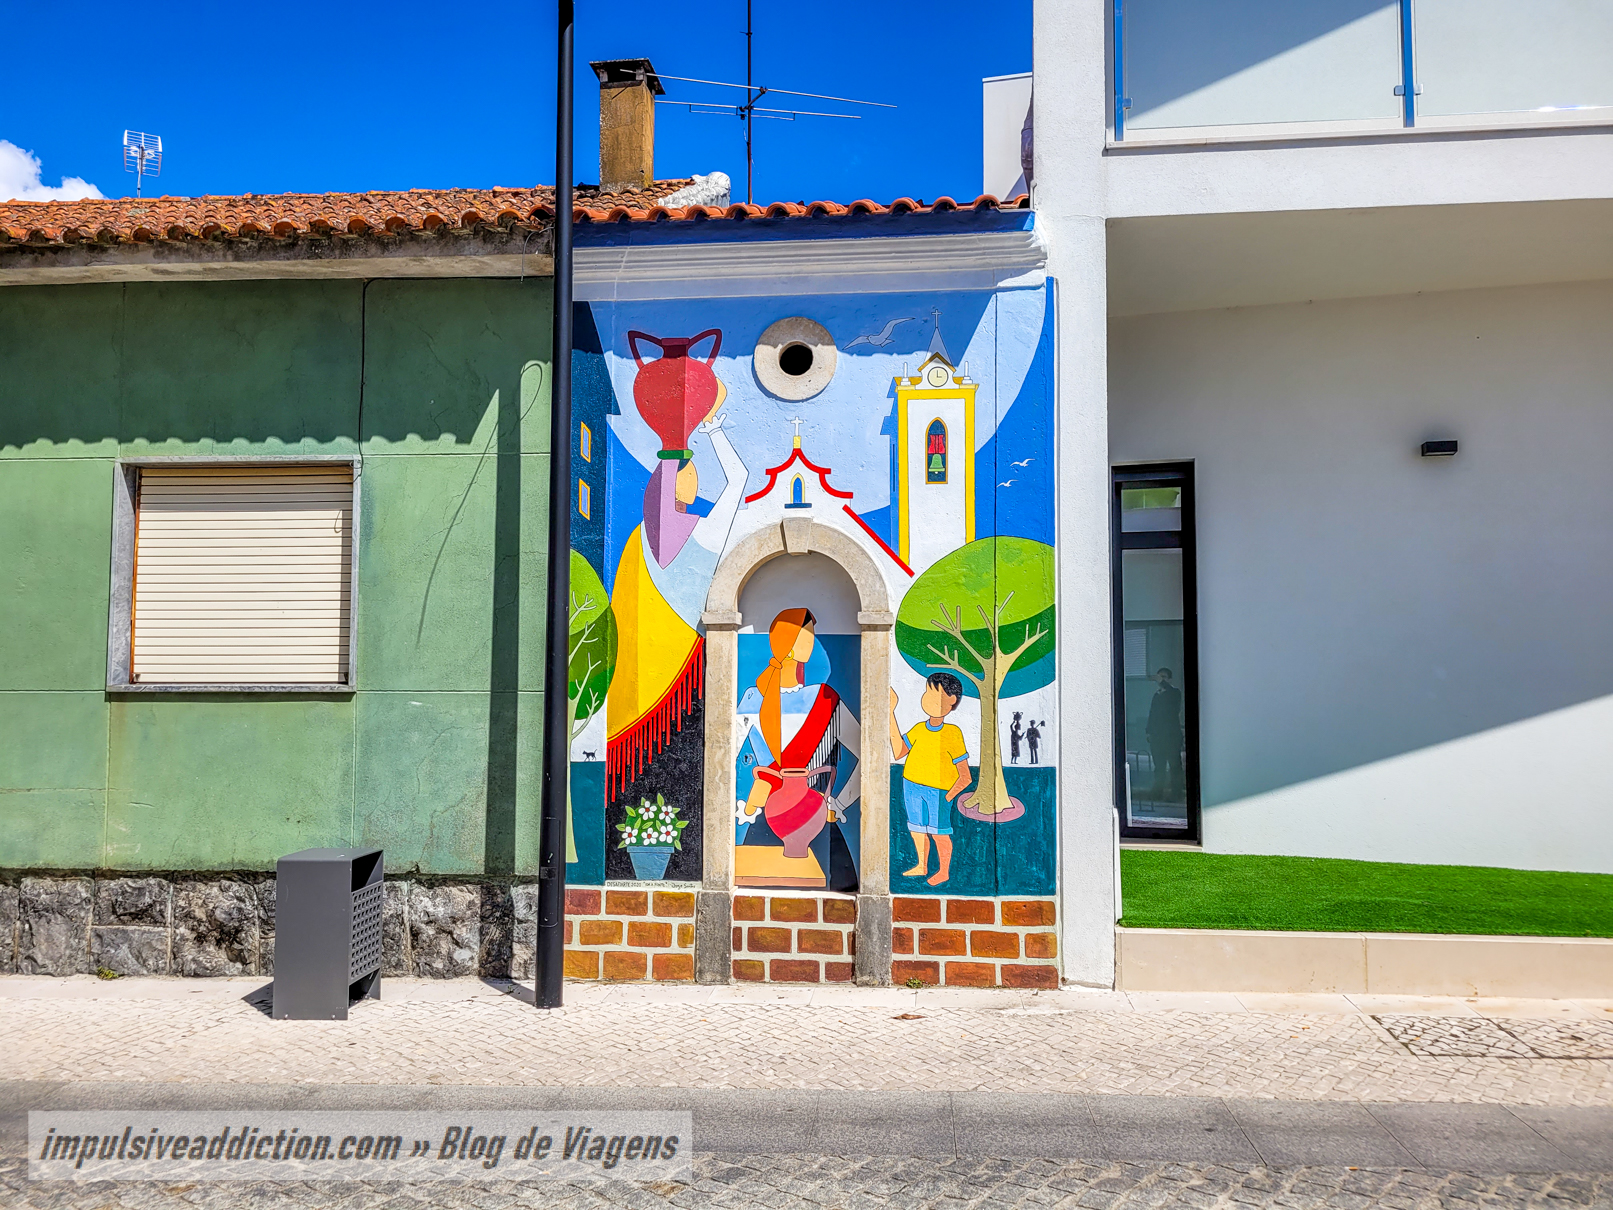 Arte Urbana nos arredores da Biblioteca Municipal de Ansião